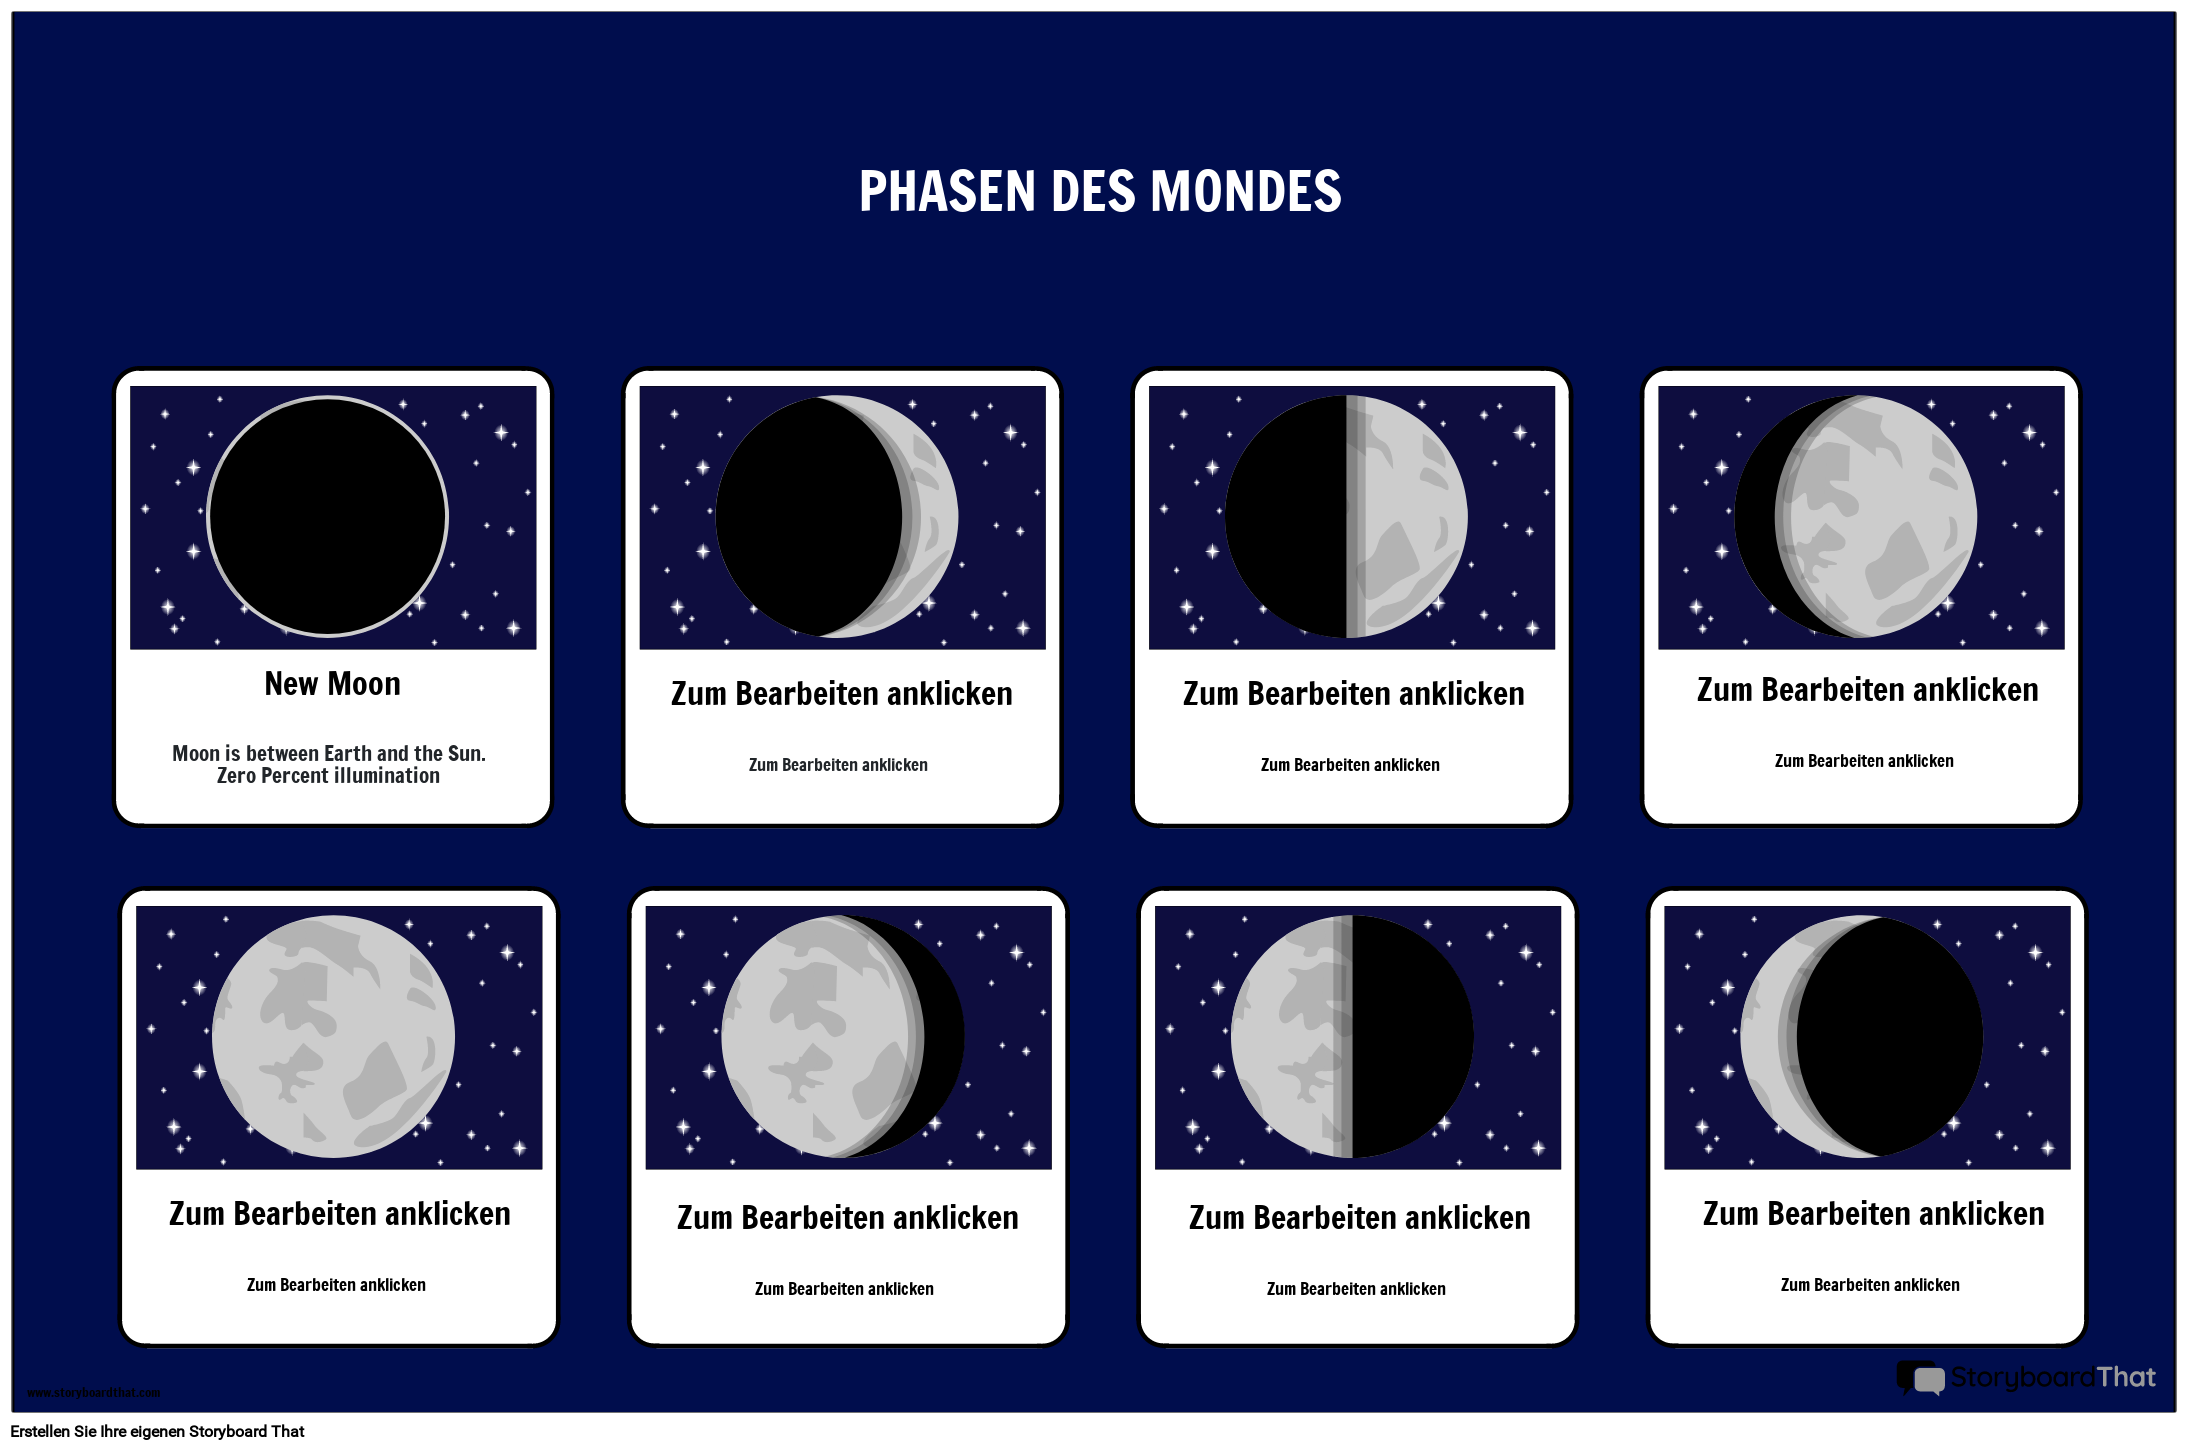 Druckbares Poster mit den Mondphasen